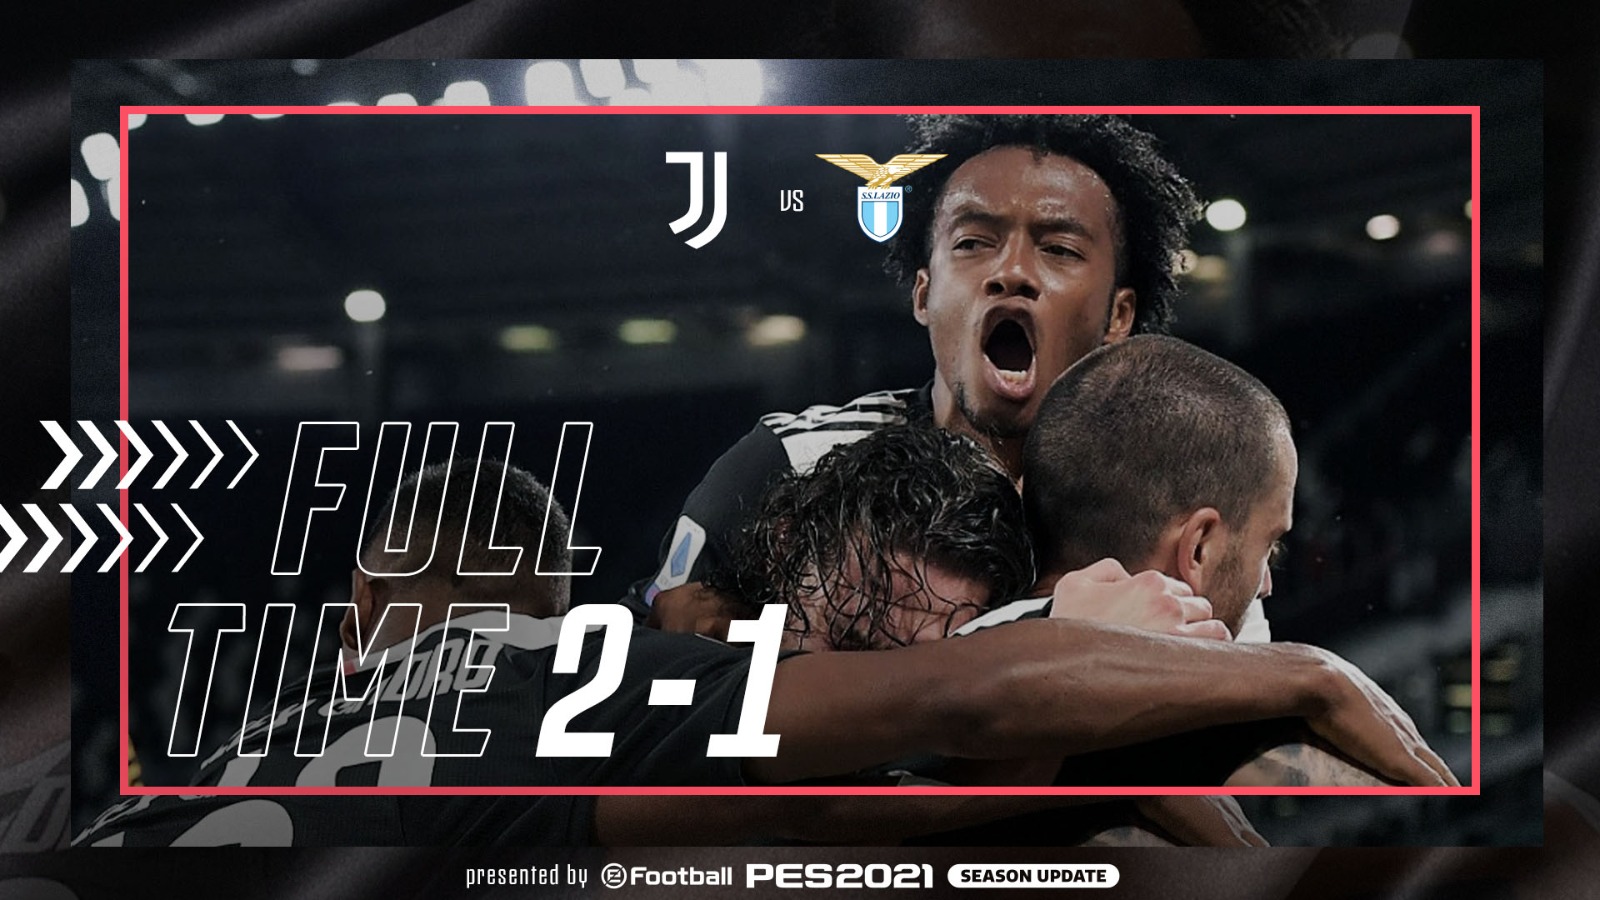 Cristiano Ronaldo's Brace helps Juventus win